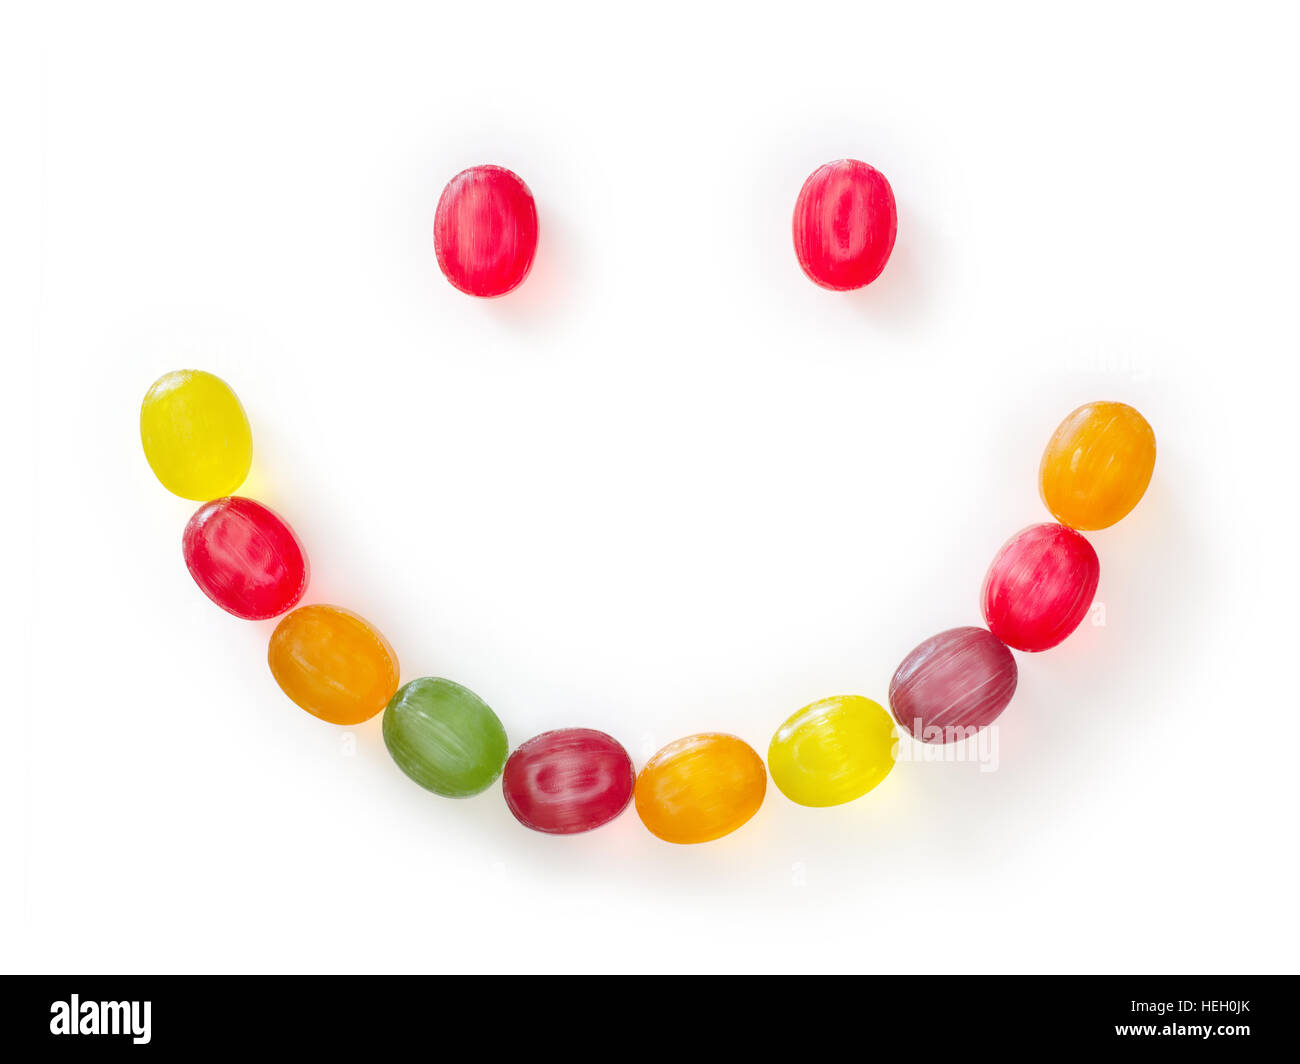 Les bonbons aux fruits colorés en forme de smiley. Isolated on white with clipping path Banque D'Images